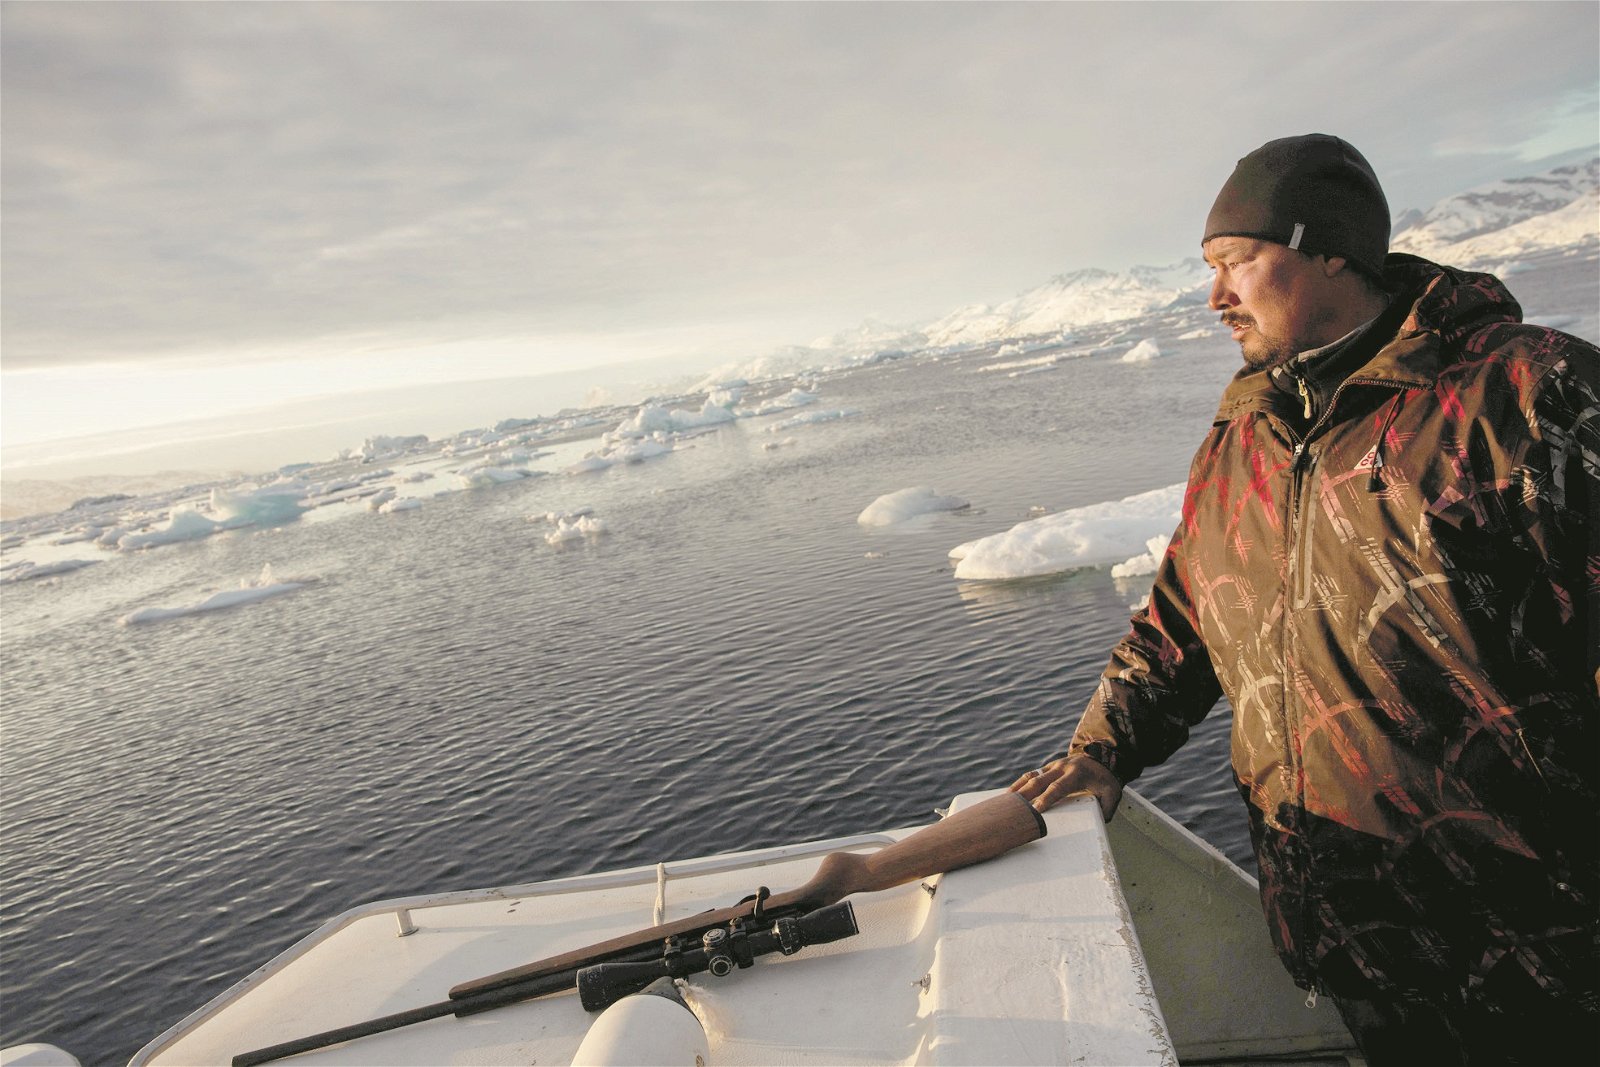 大陆冰川因暖化现象而渐渐融化，格陵兰岛居民尼尔森表示，从祖辈那暸解的一切再也找不回来了。这是海豹猎人约瑟瓦搭船到指定地点打猎，夕阳映照出他脸上的唏嘘。